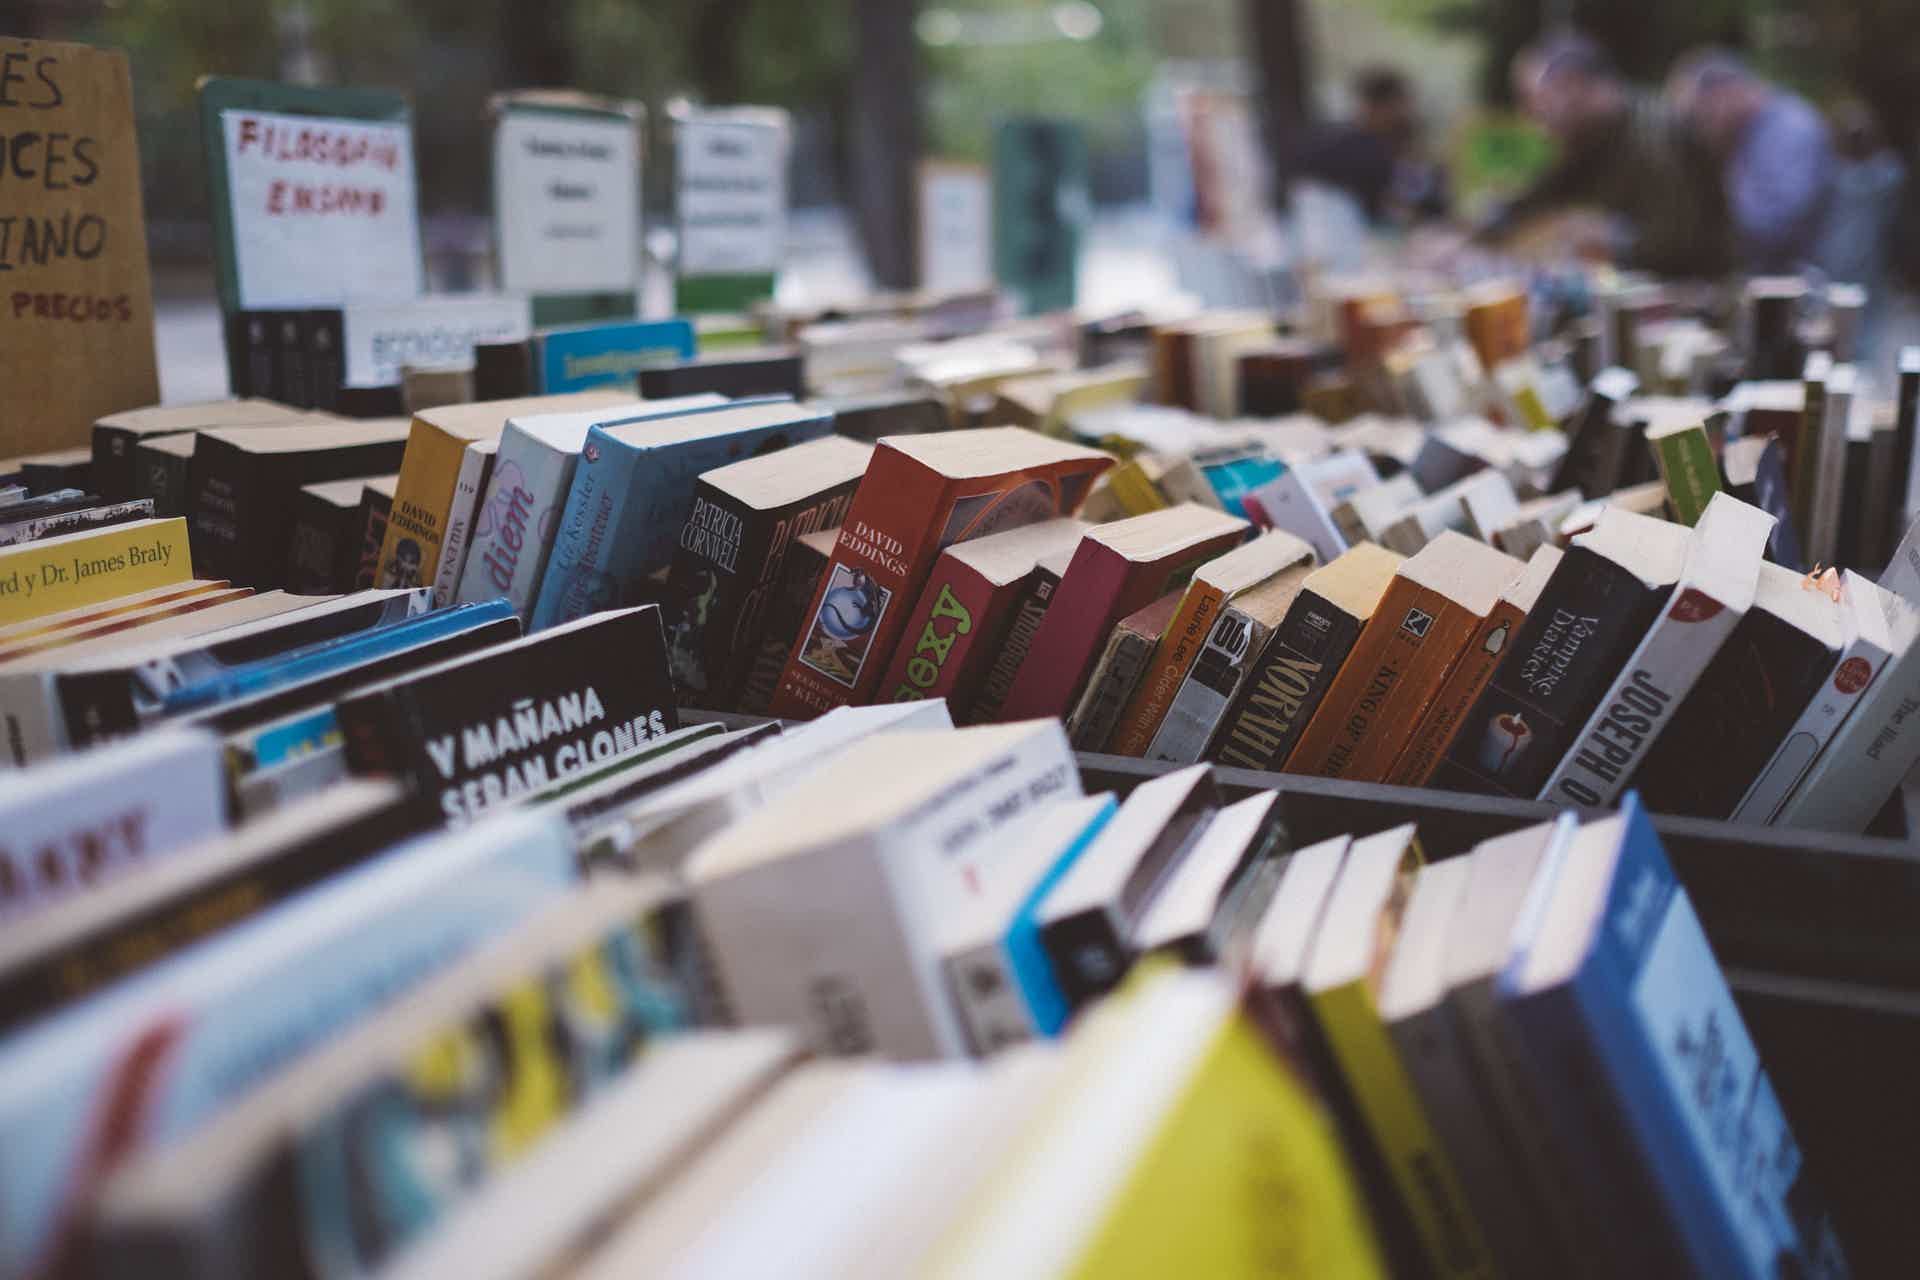 Compre livros usados e economize dinheiro para os demais itens da lista. Fonte: Pixabay.